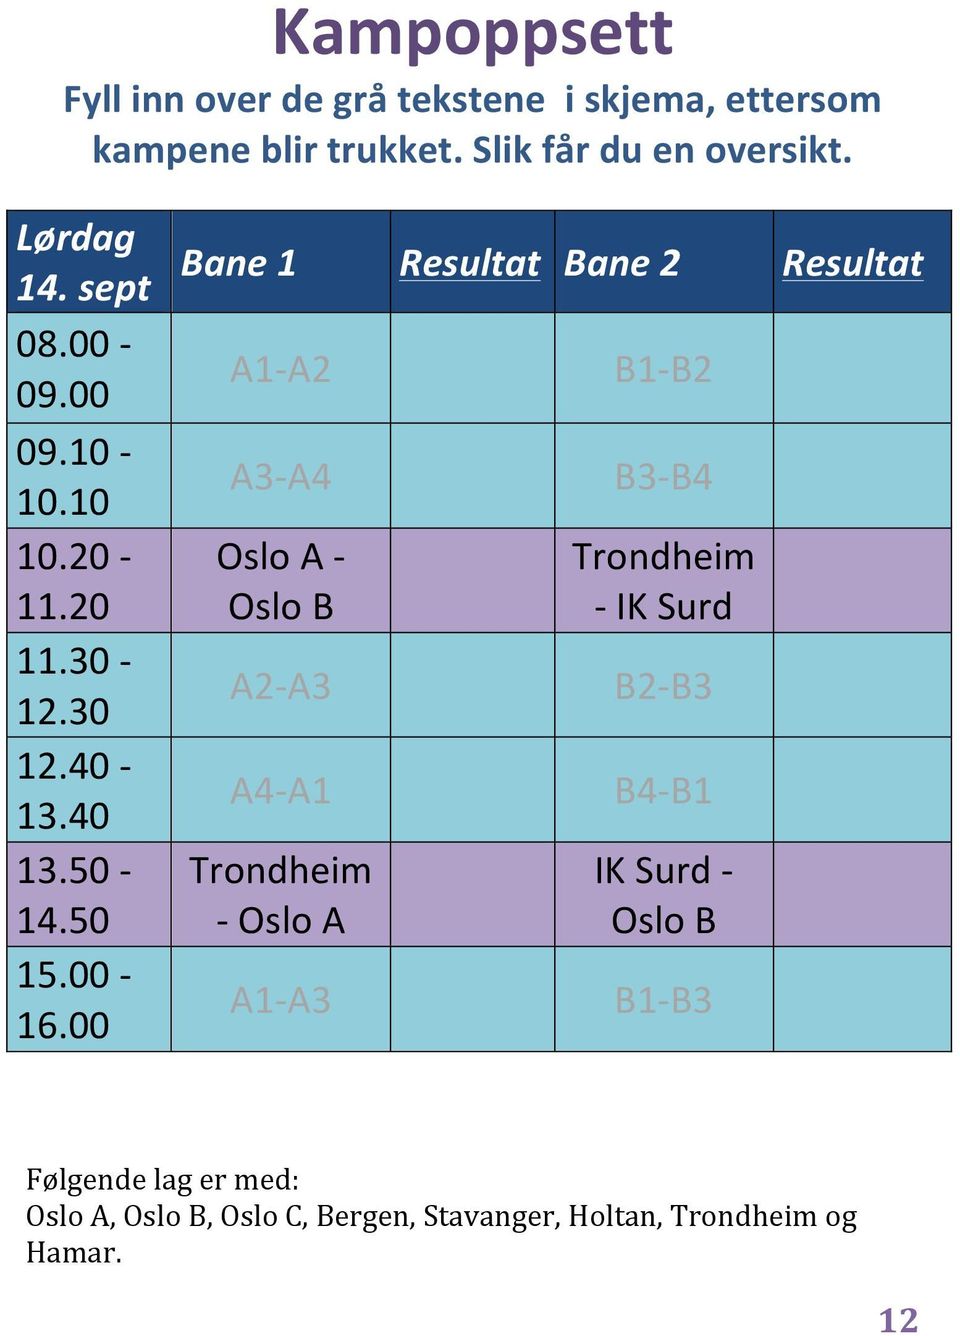 00 Bane 1 Resultat Bane 2 Resultat A1- A2 A3- A4 Oslo A - Oslo B A2- A3 A4- A1 Trondheim - Oslo A A1- A3 B1- B2 B3- B4